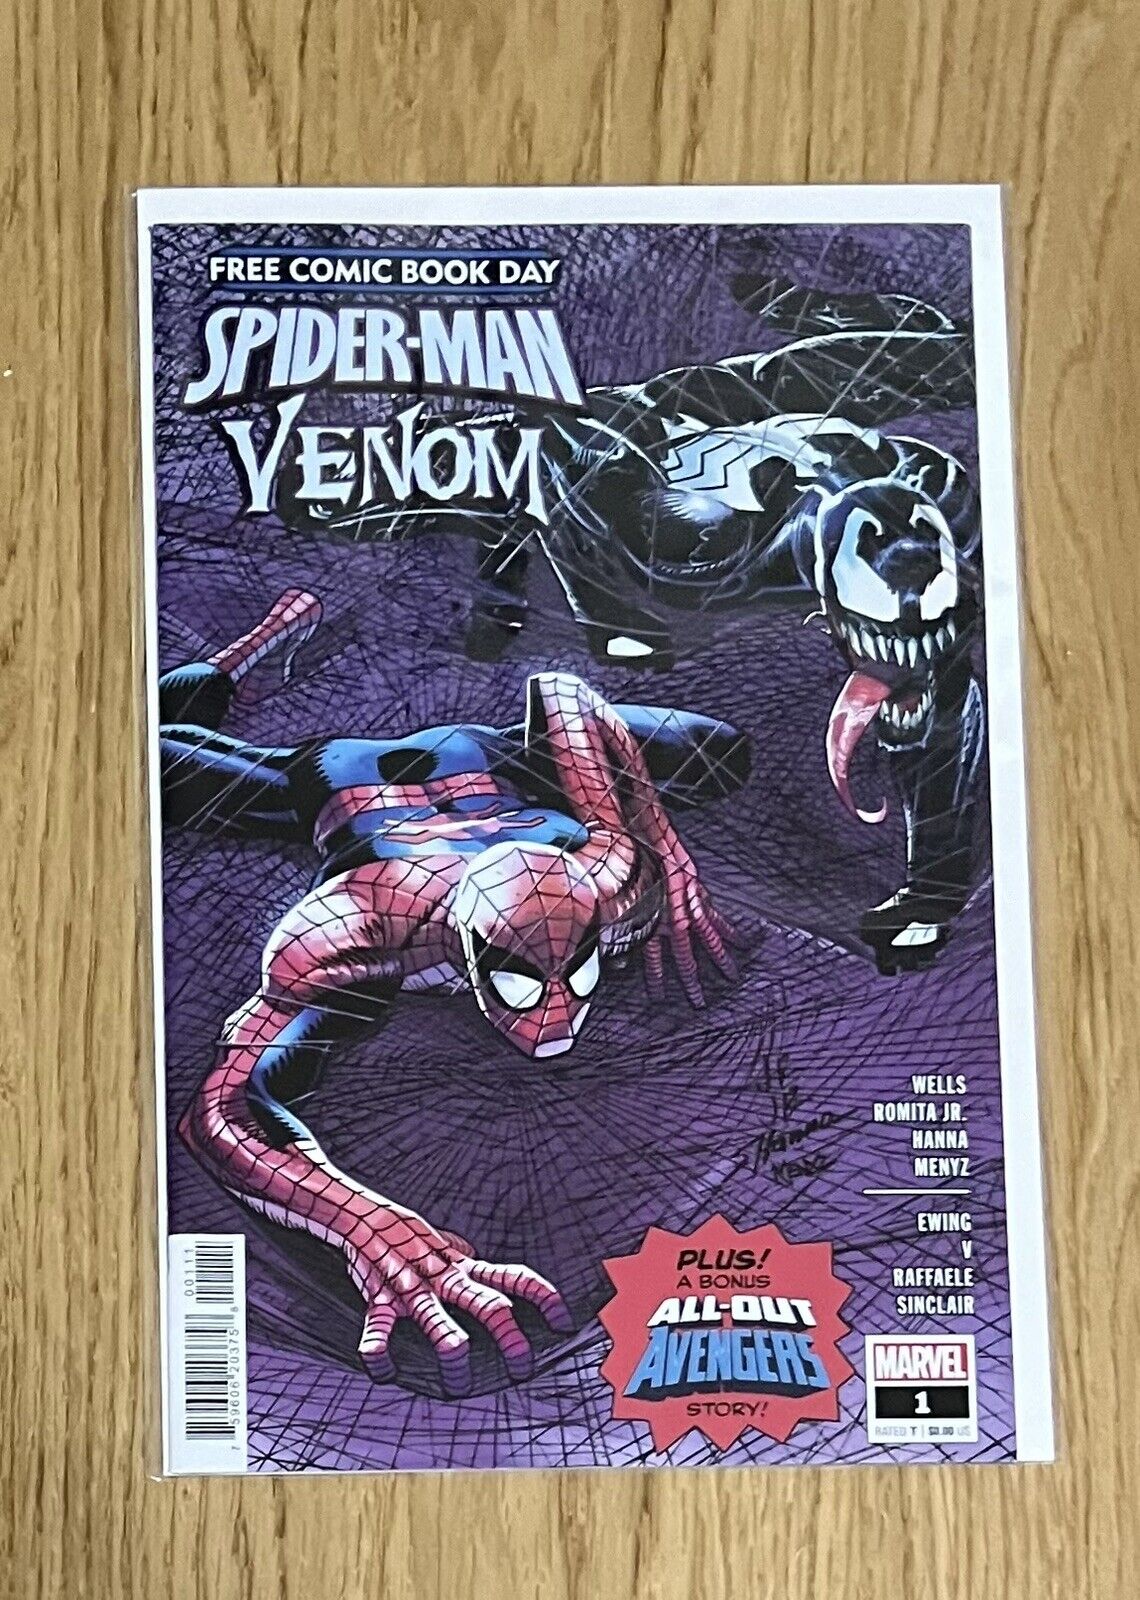 FCBD 2022 Spider-Man Venom #1 Main Cover A Marvel Comics 2022